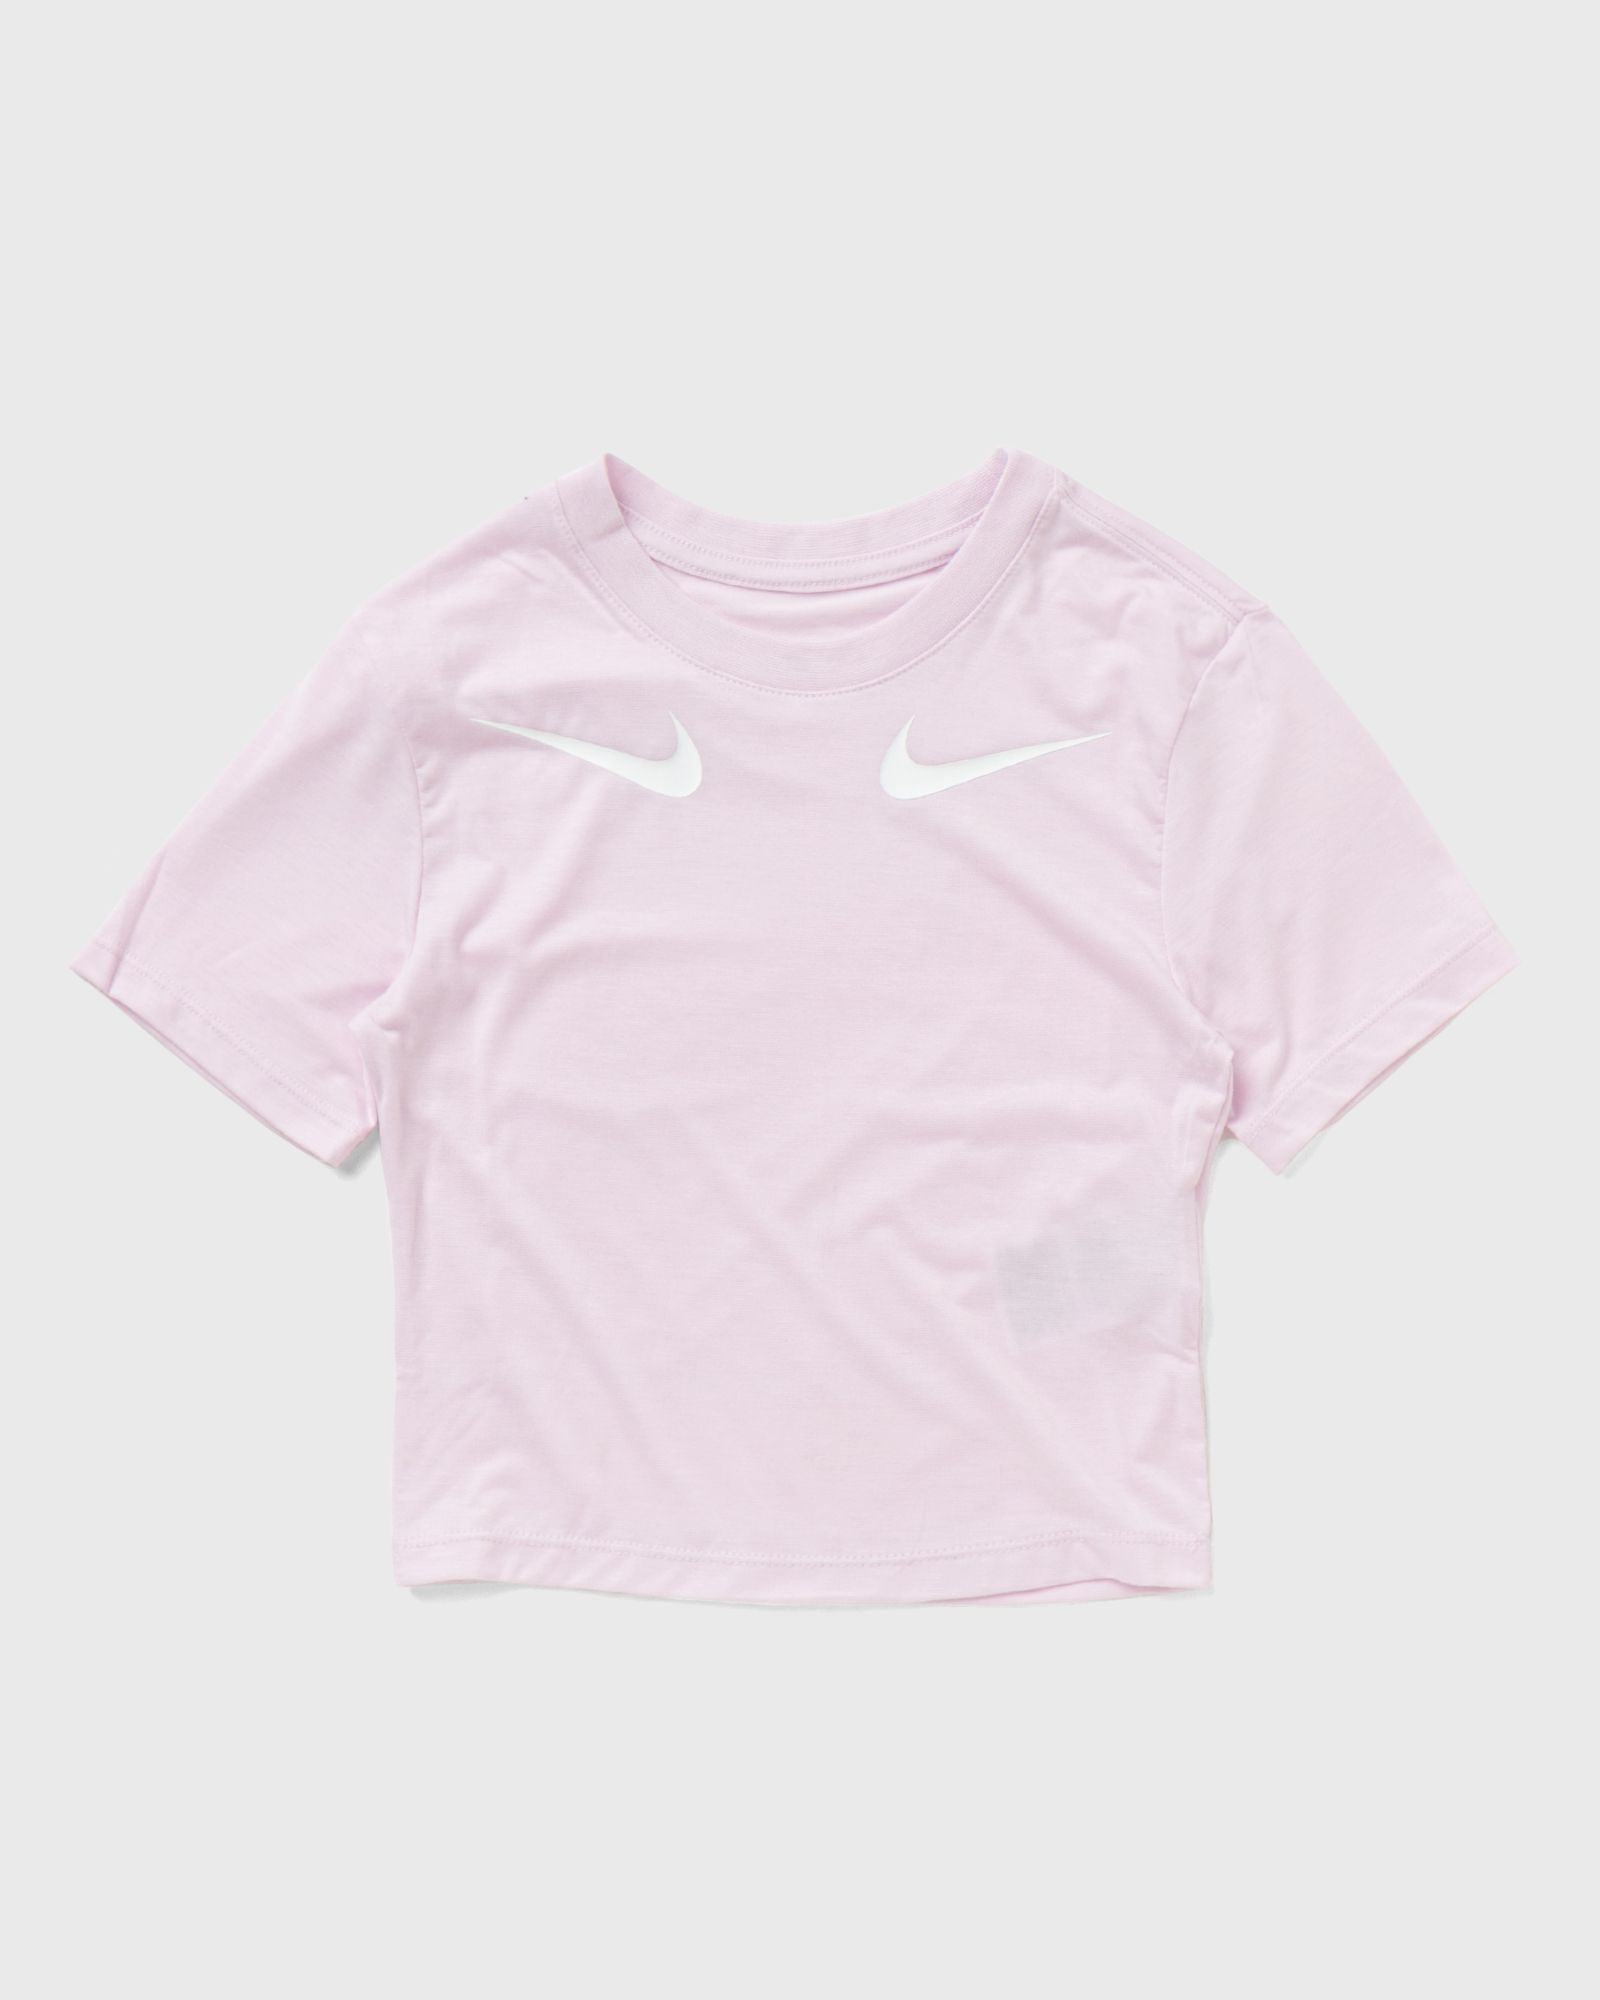 Nike - wmns sportswear tee women shortsleeves pink in größe:l